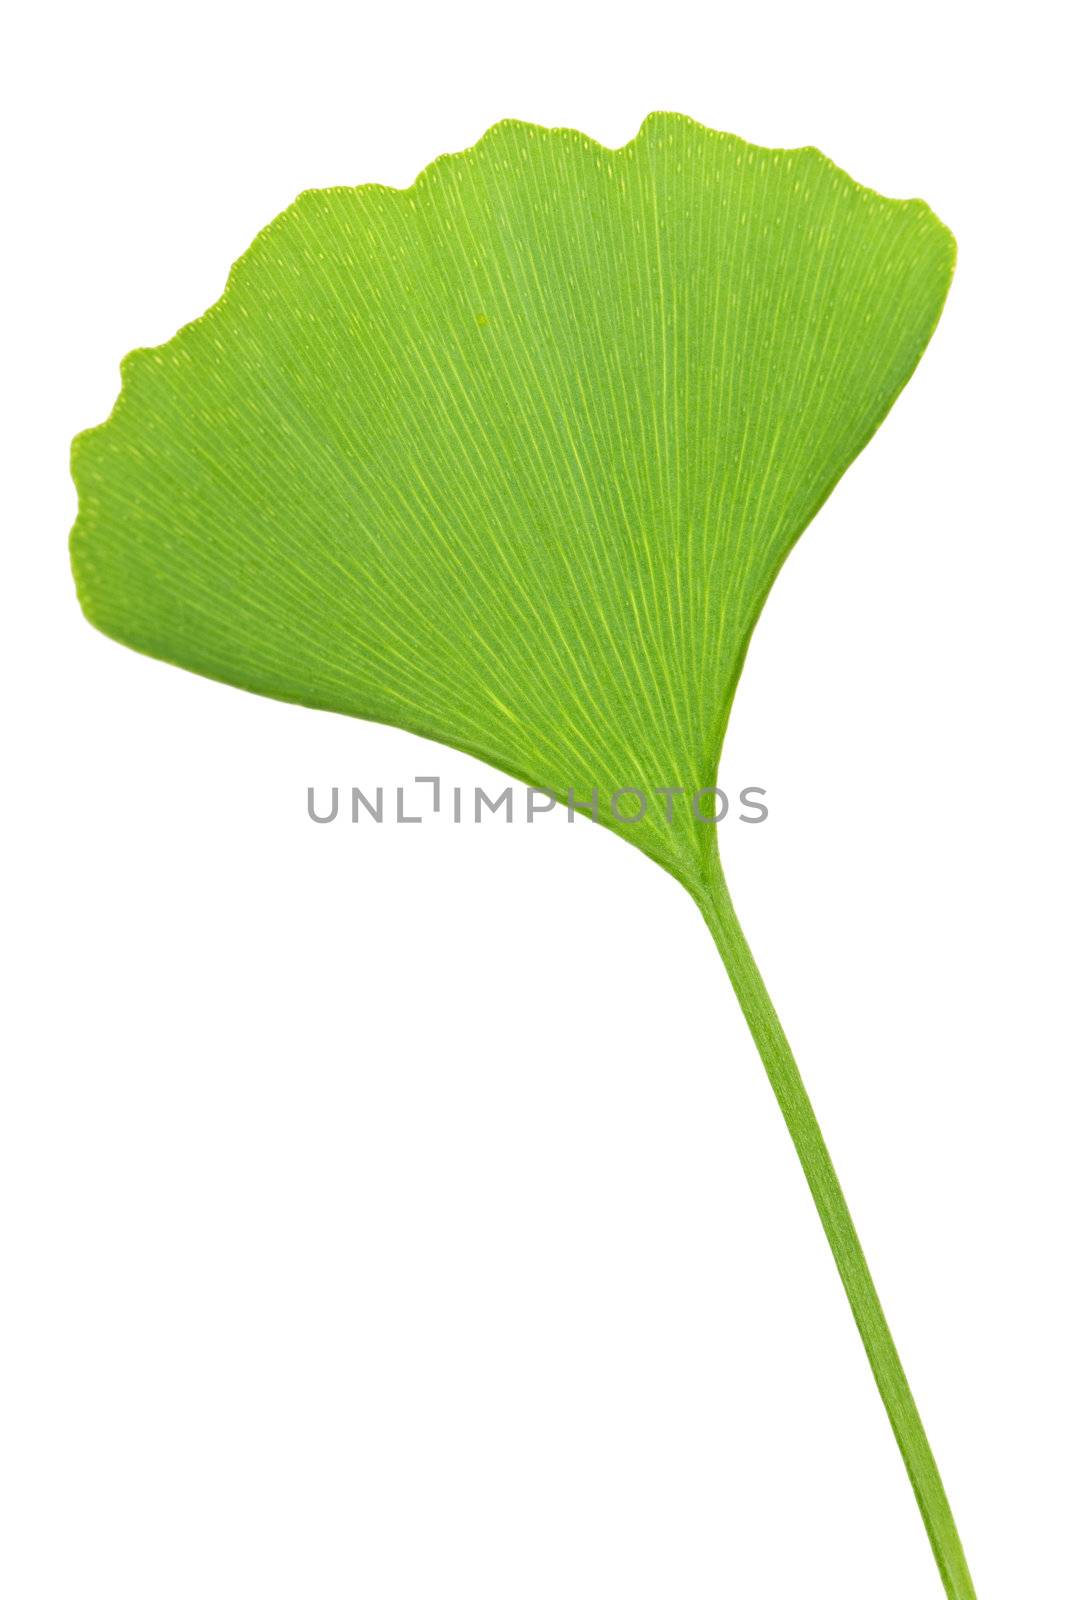 Ginkgo Biloba leaf by elenathewise